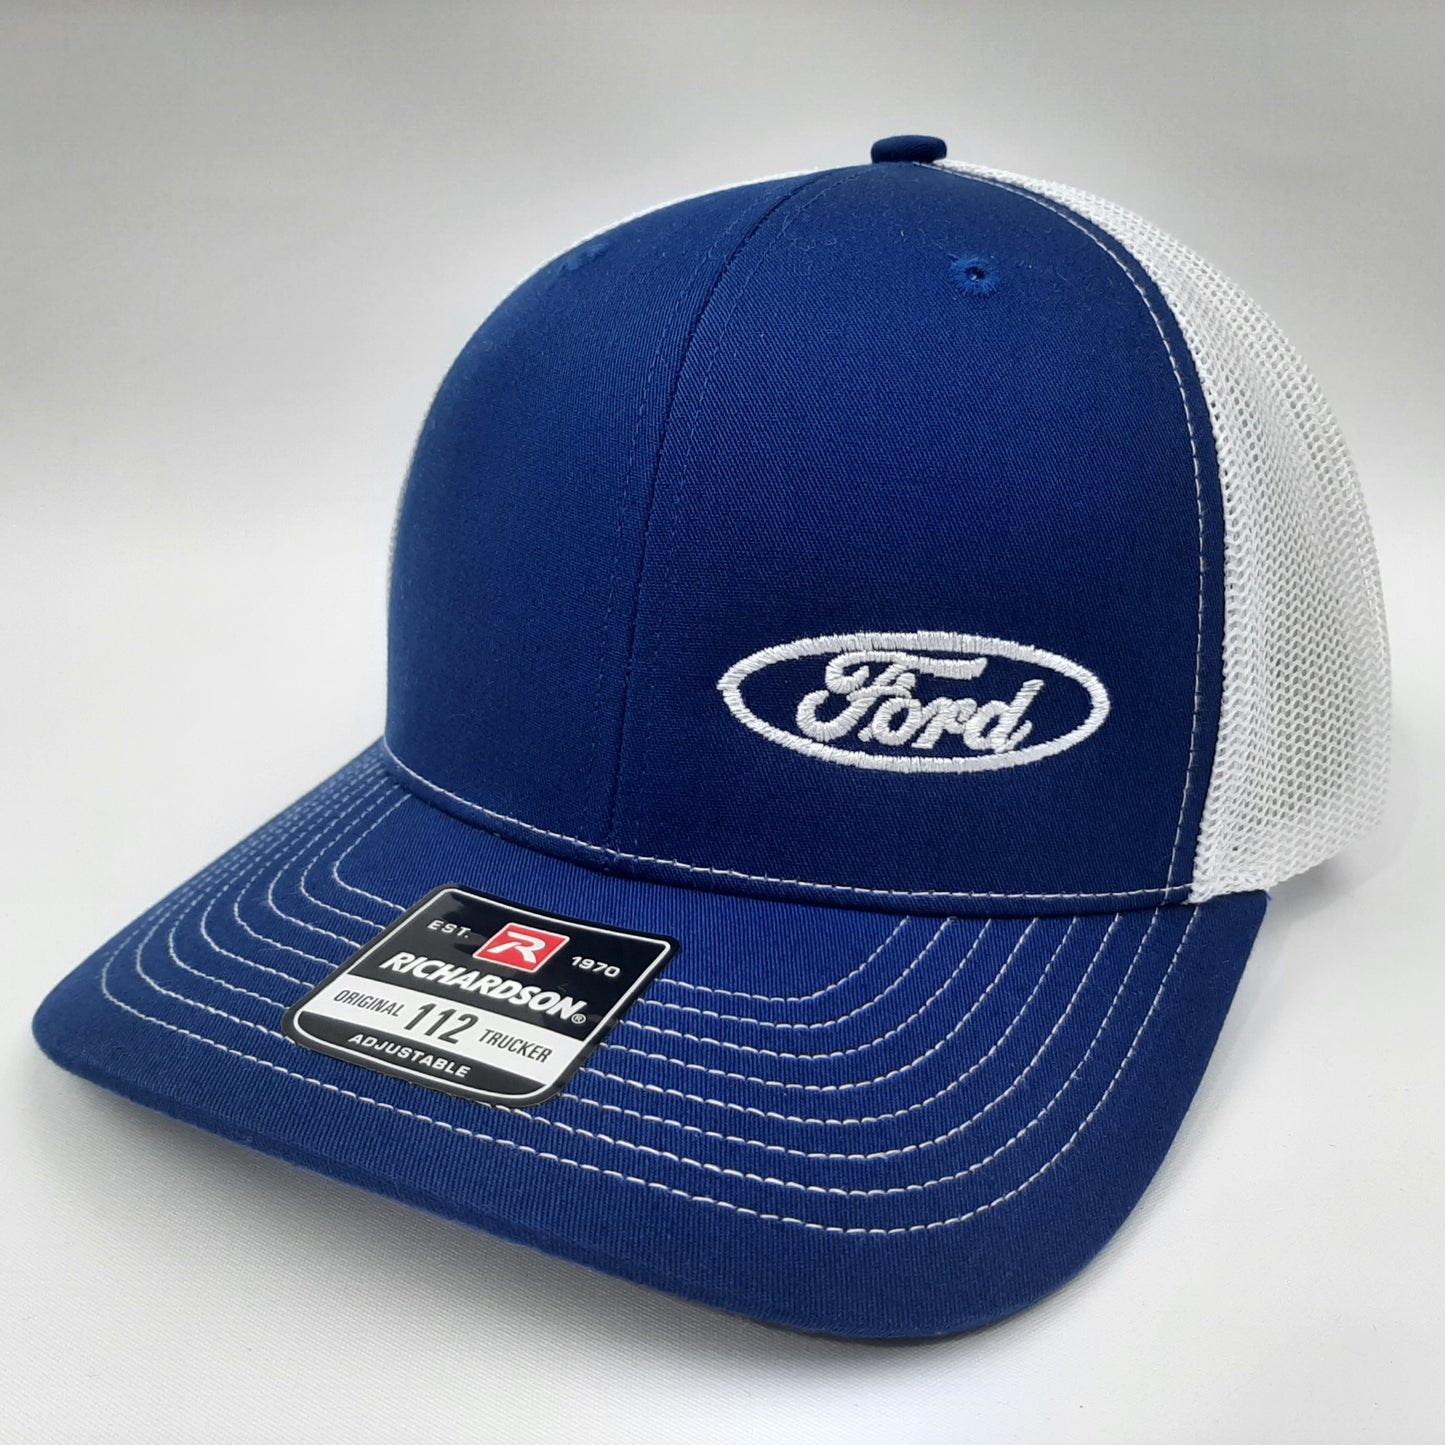 Ford Richardson 112 Trucker Mesh Snapback Cap Hat Blue & White